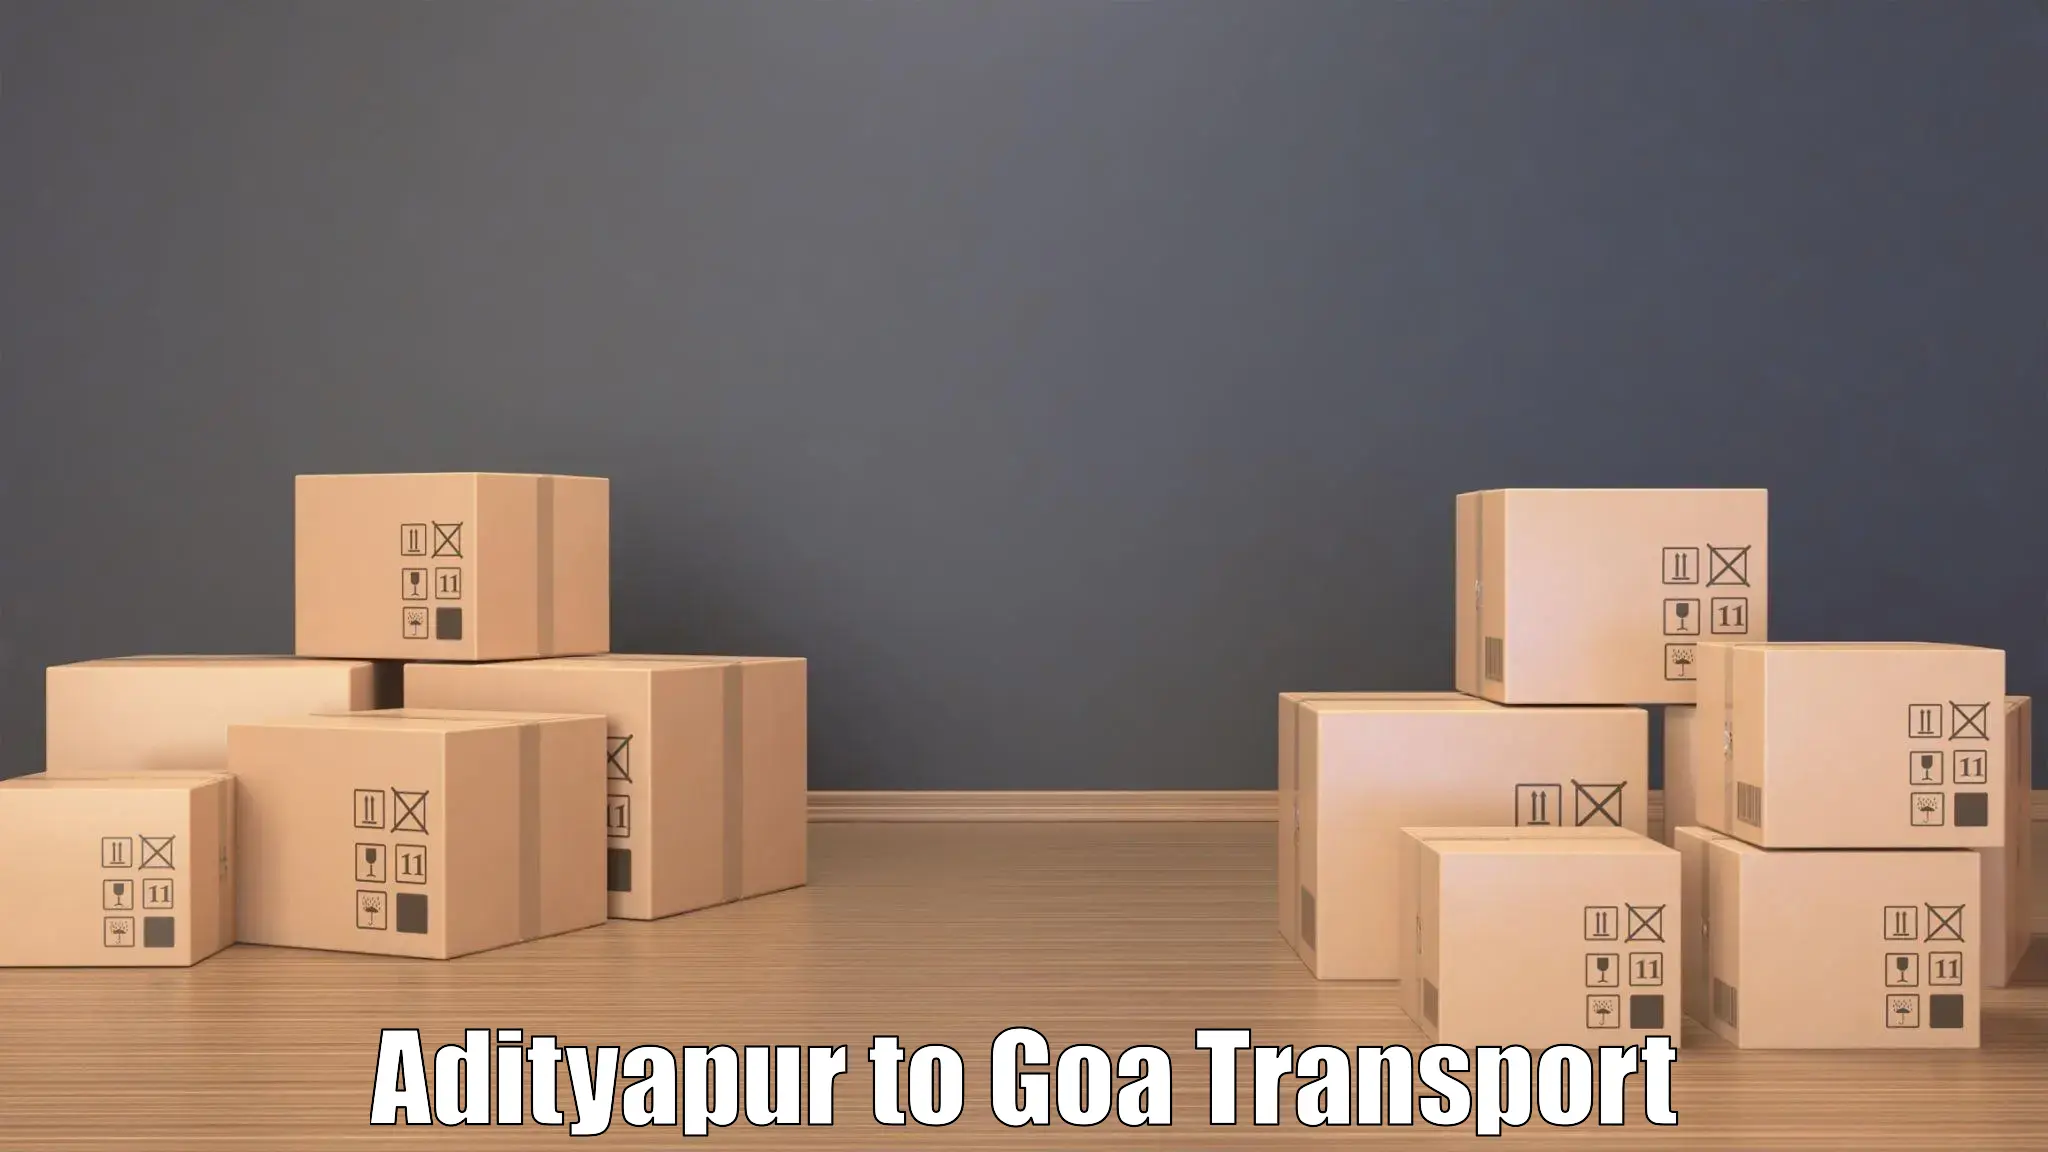 Shipping partner Adityapur to IIT Goa